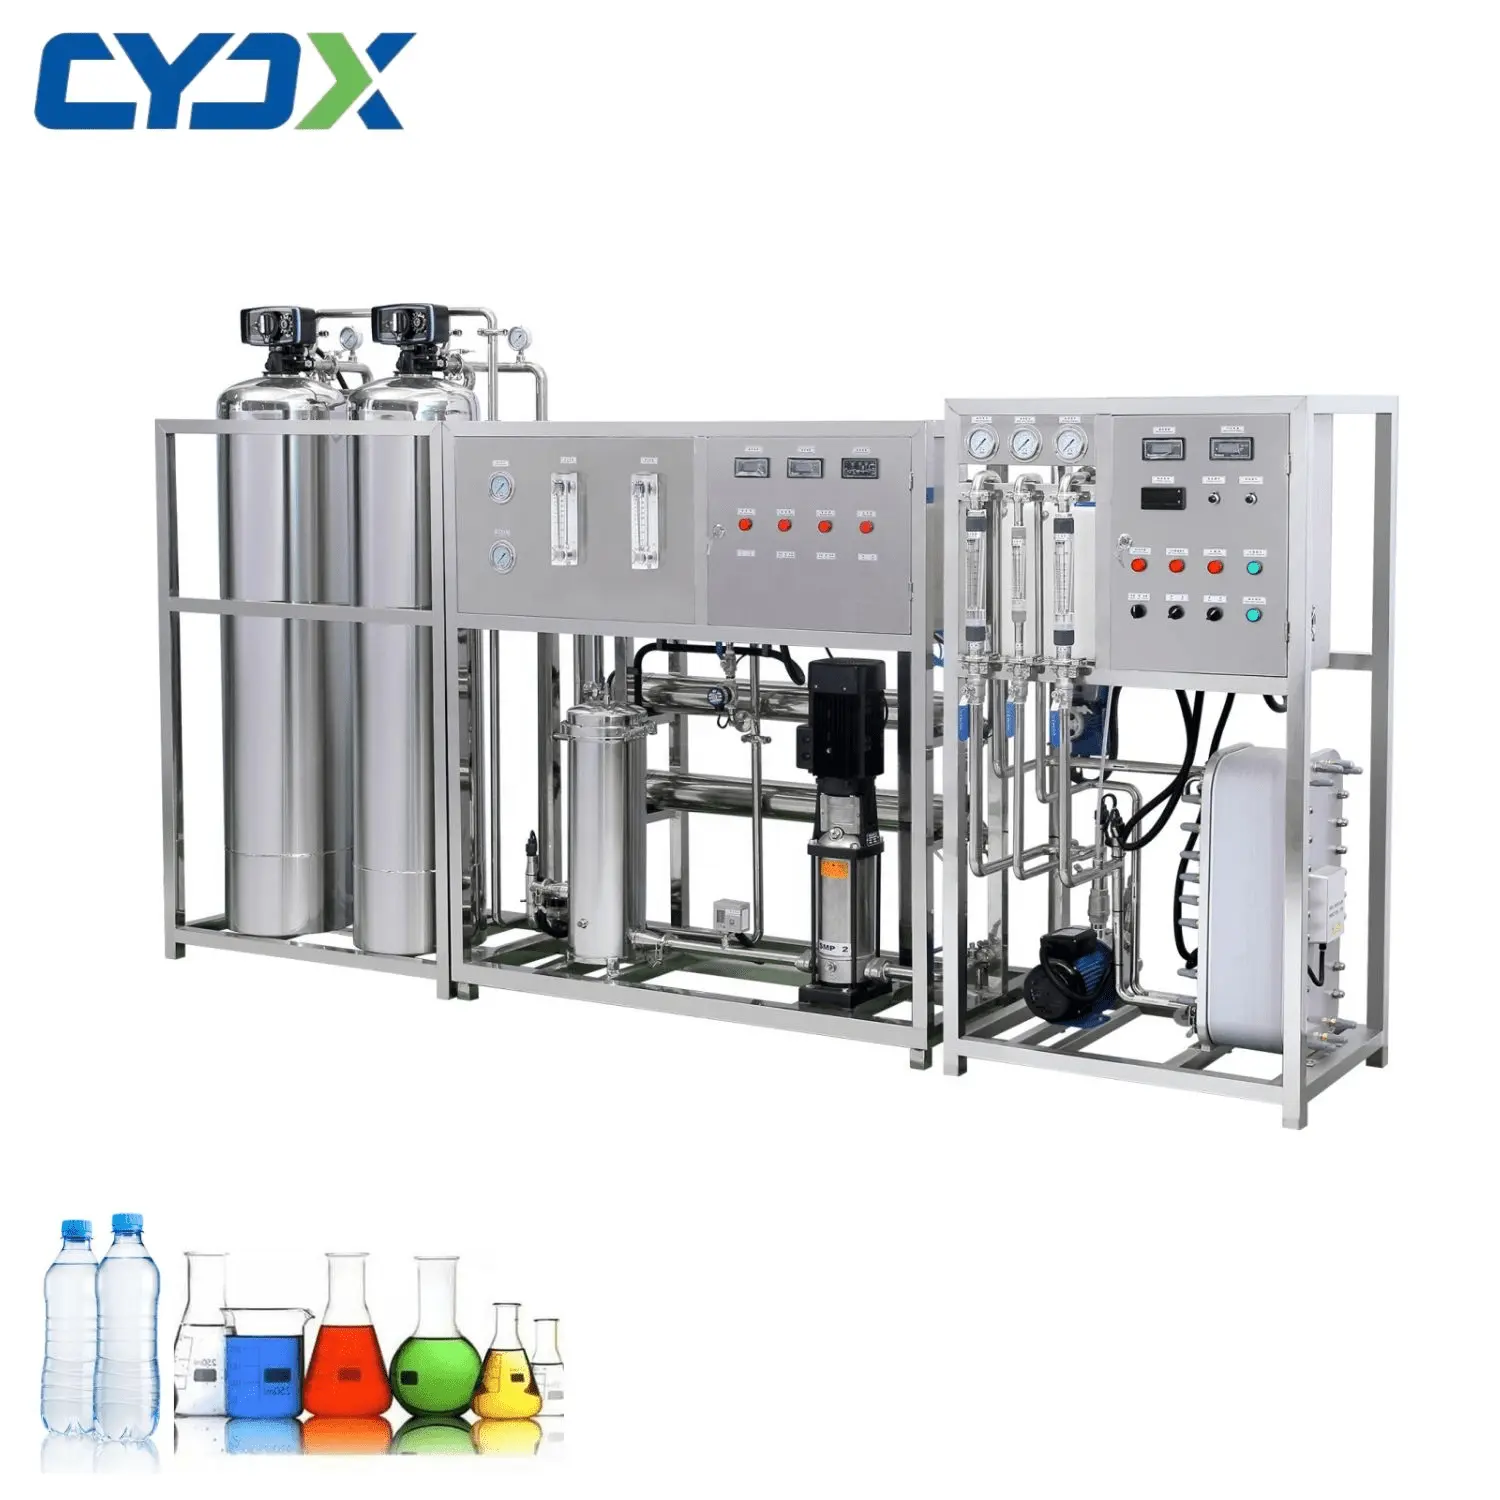 CYJX iyi fiyat 5000 LPH endüstriyel otomatik RO sistemi küçük şişelenmiş içme suyu arıtma tesisi satılık